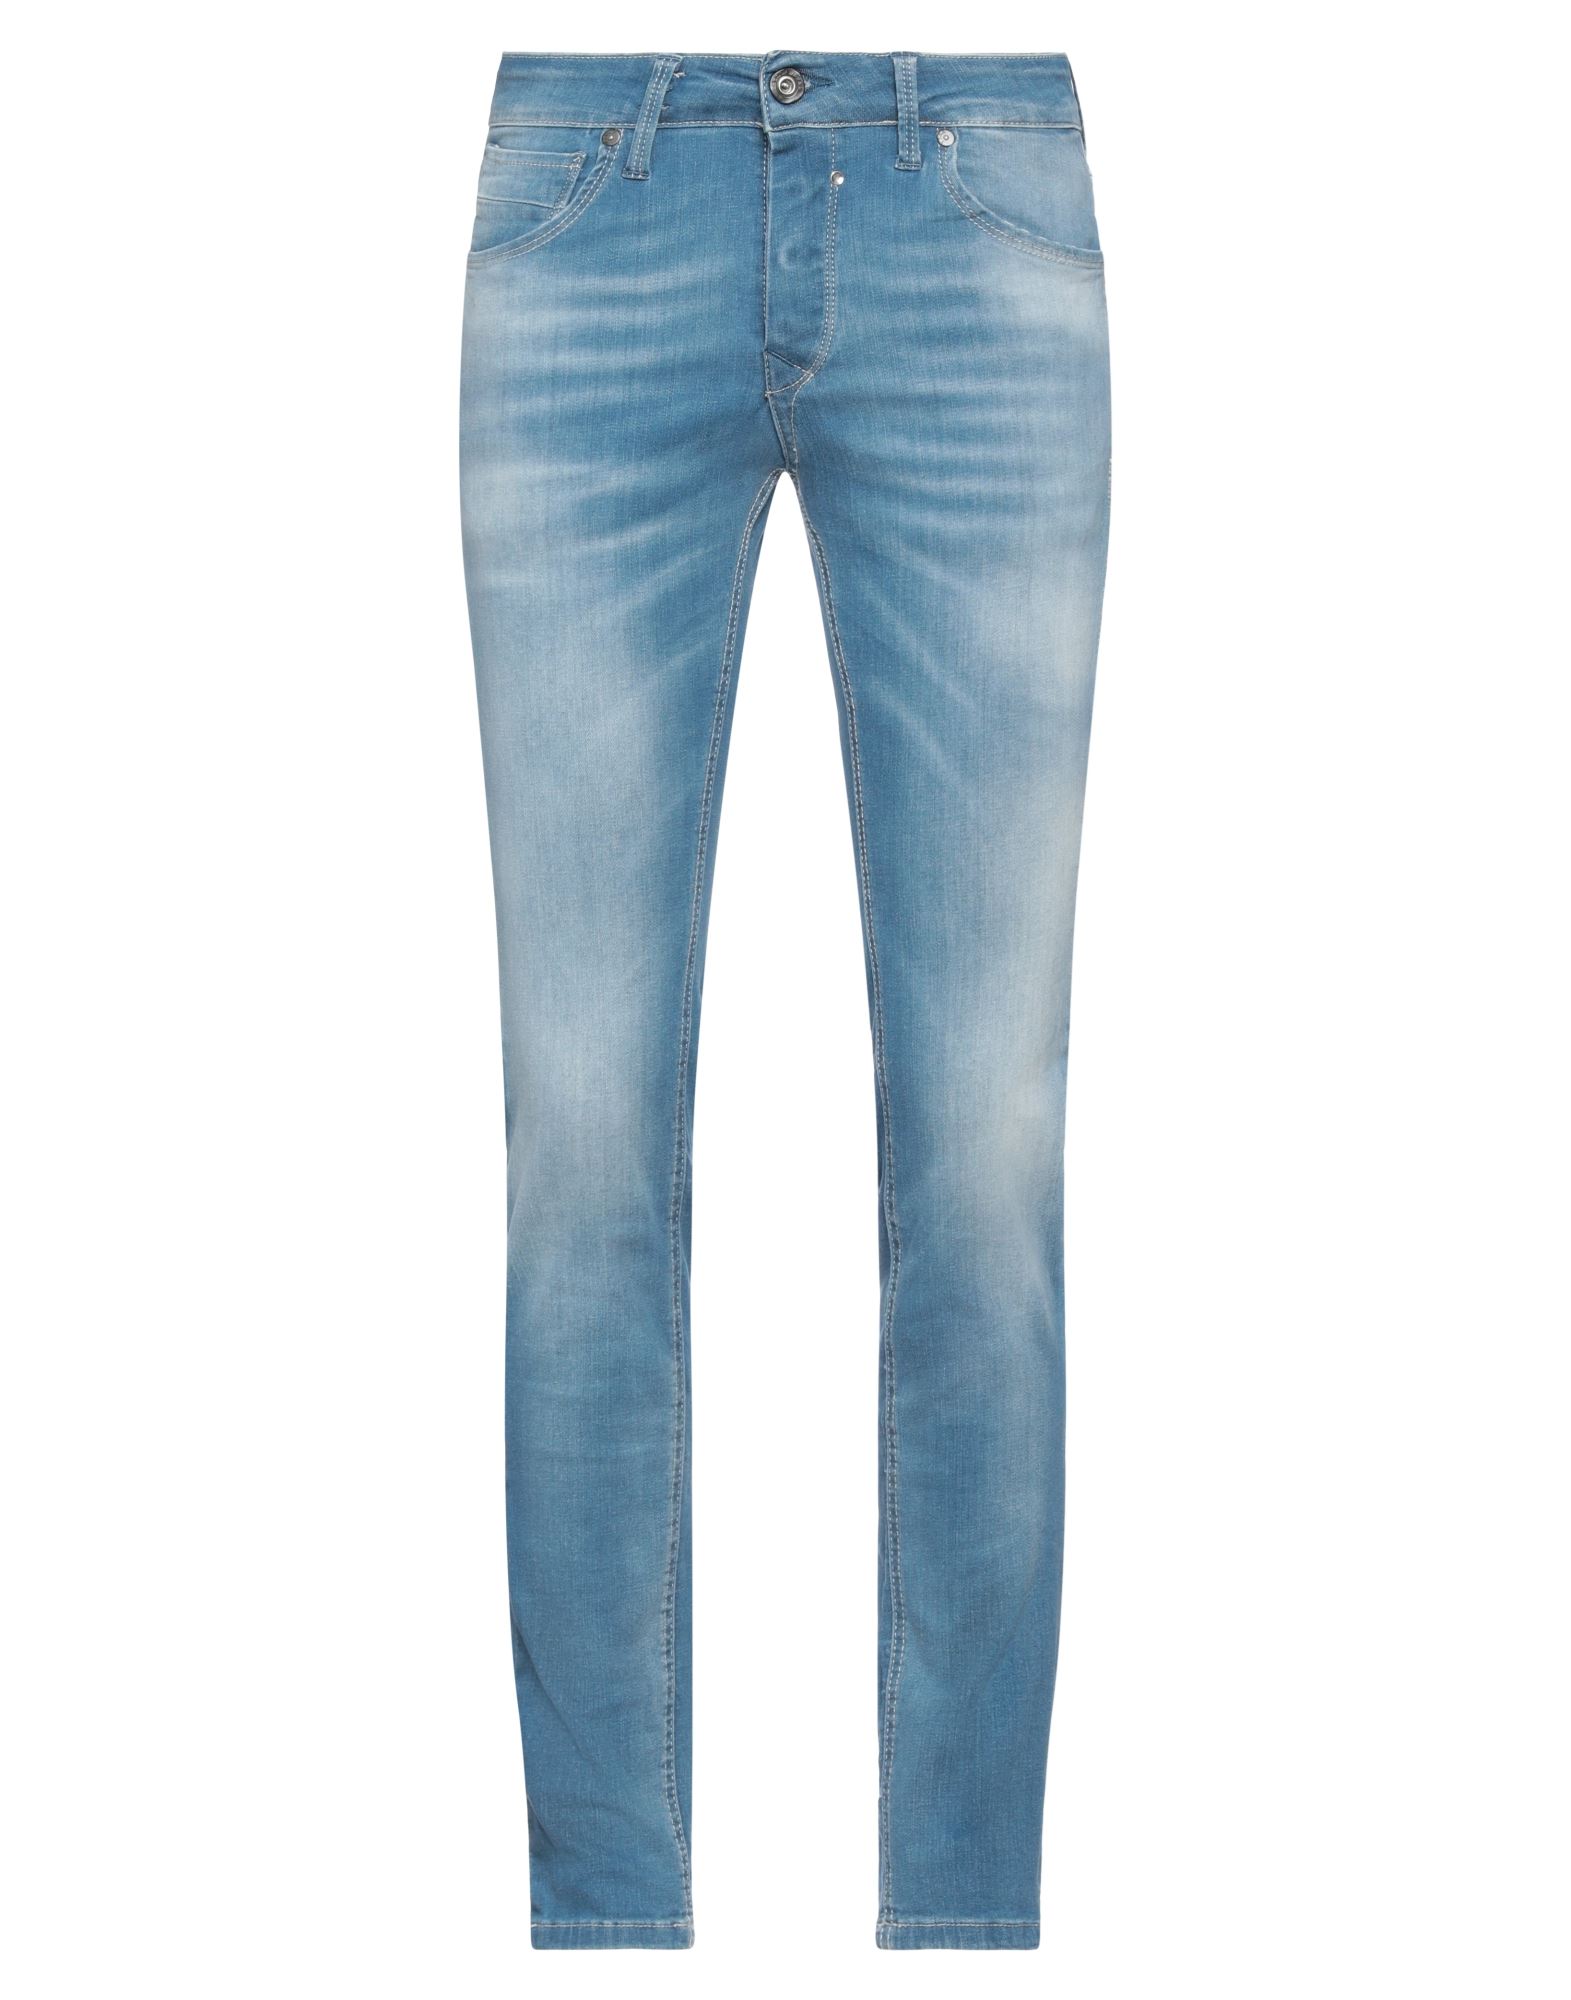 Jack & Jones Man Jeans Blue Size 33w-32l Cotton, Elastane